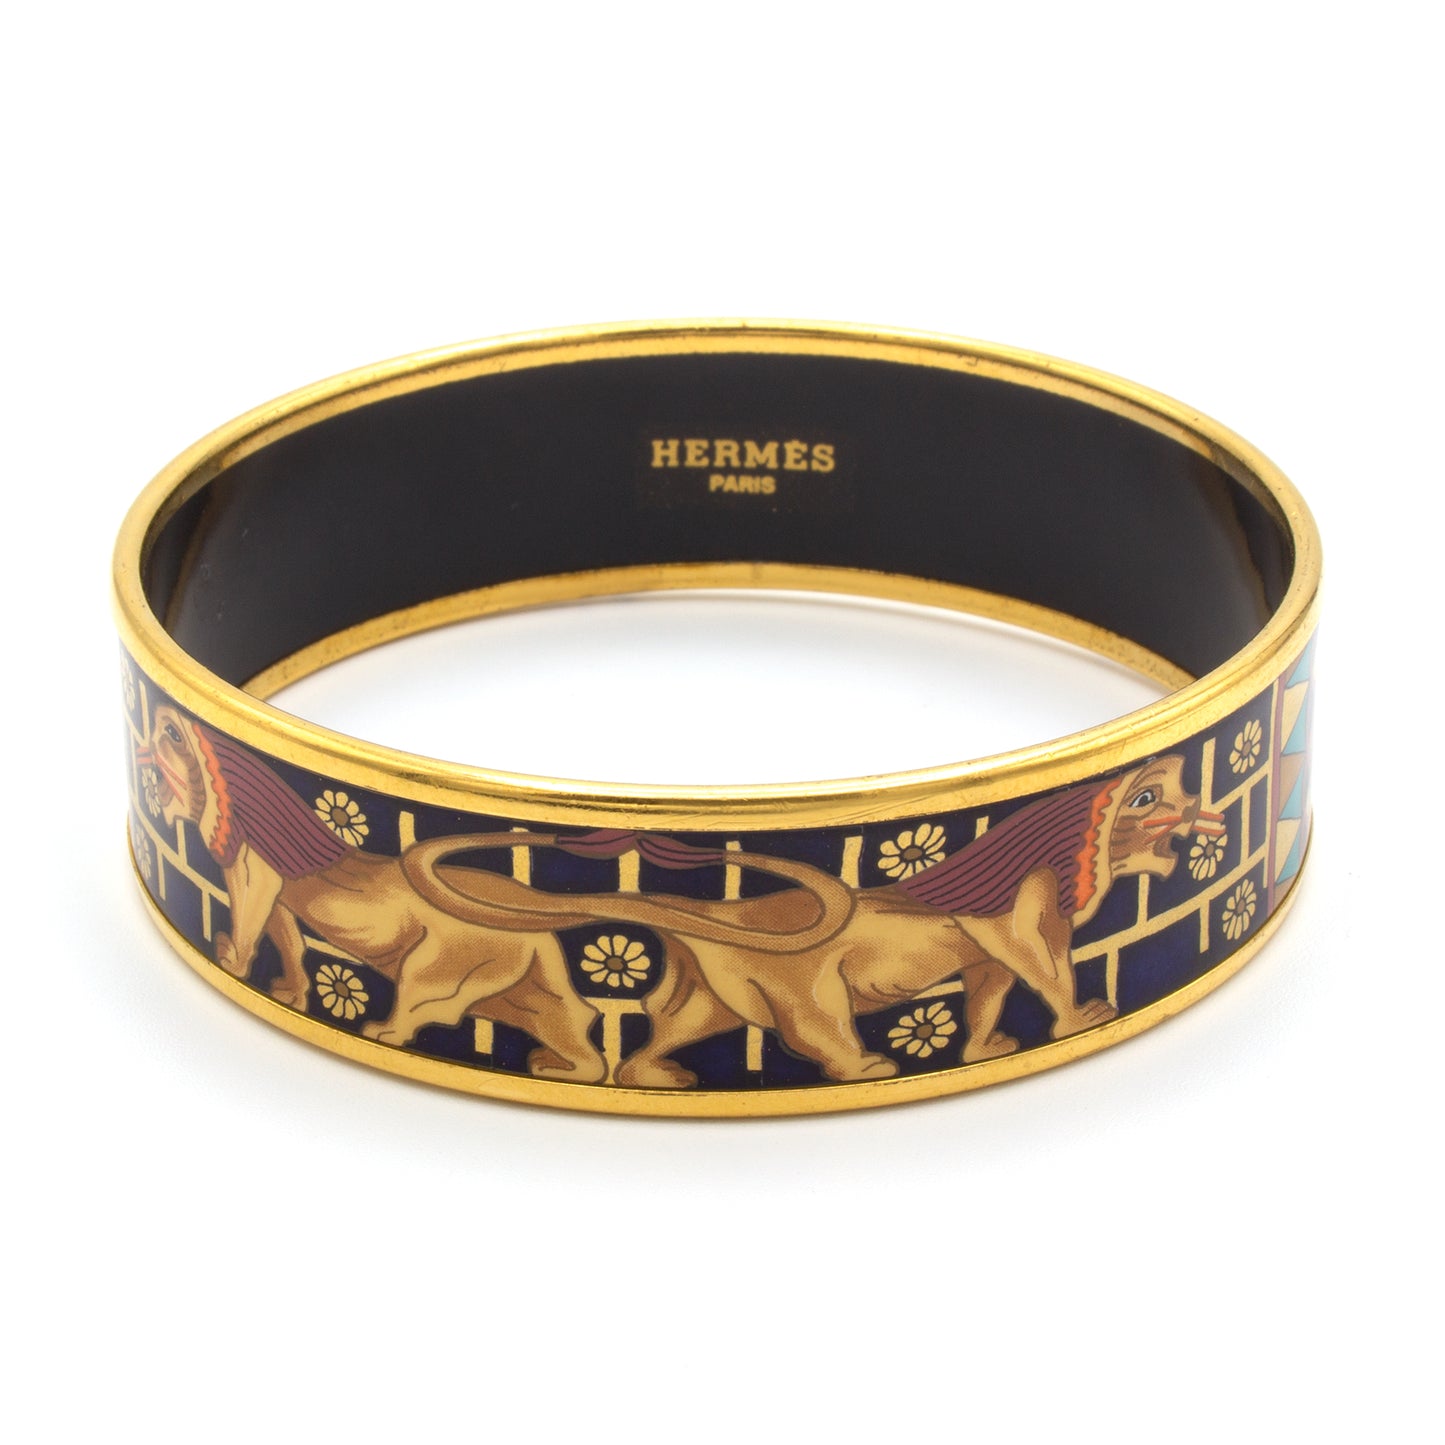 Hermès enamel bracelet